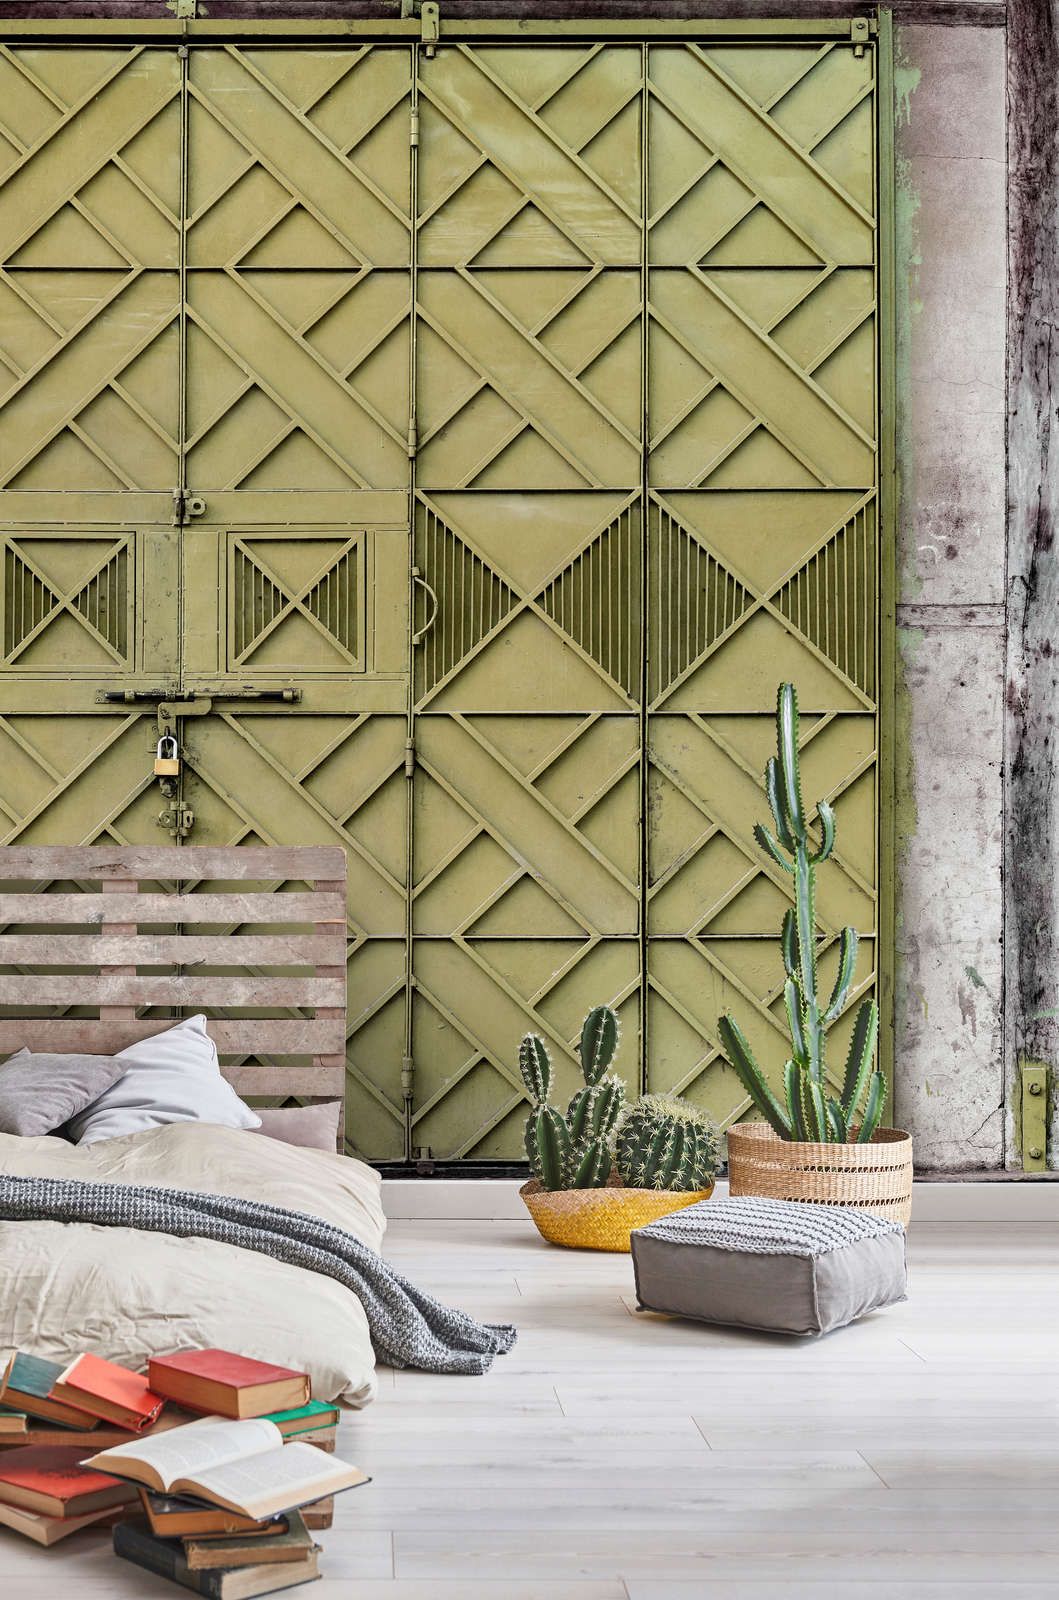             Digital behang »agra« - Close-up van een groen metalen hek met ruitvormige decoraties - Licht geweven stof met structuur
        